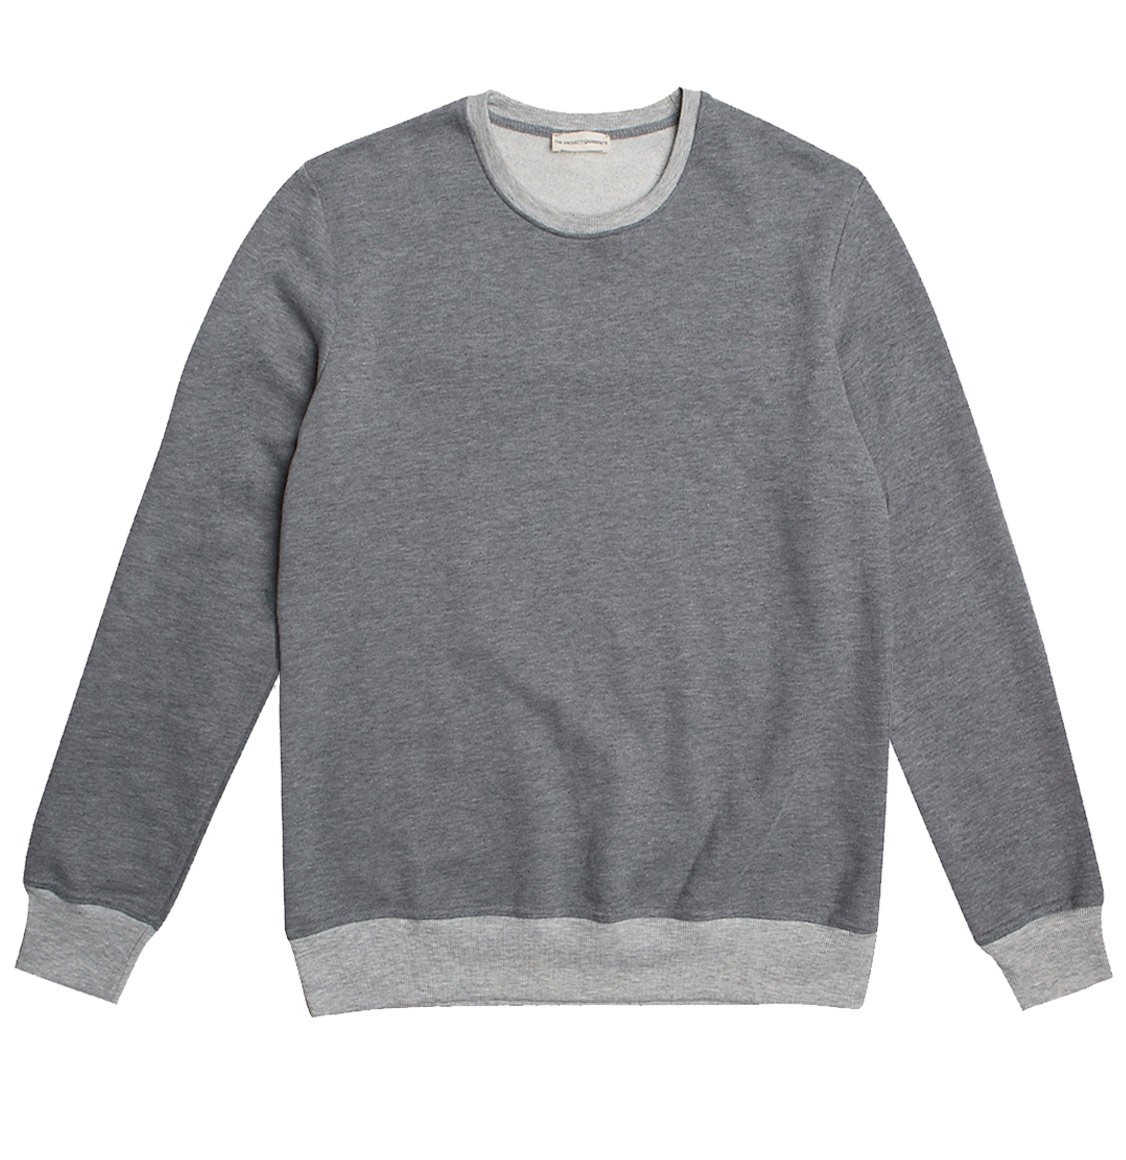 The Project Garments Color Block Crew Neck Sweatshirt Melange Grey